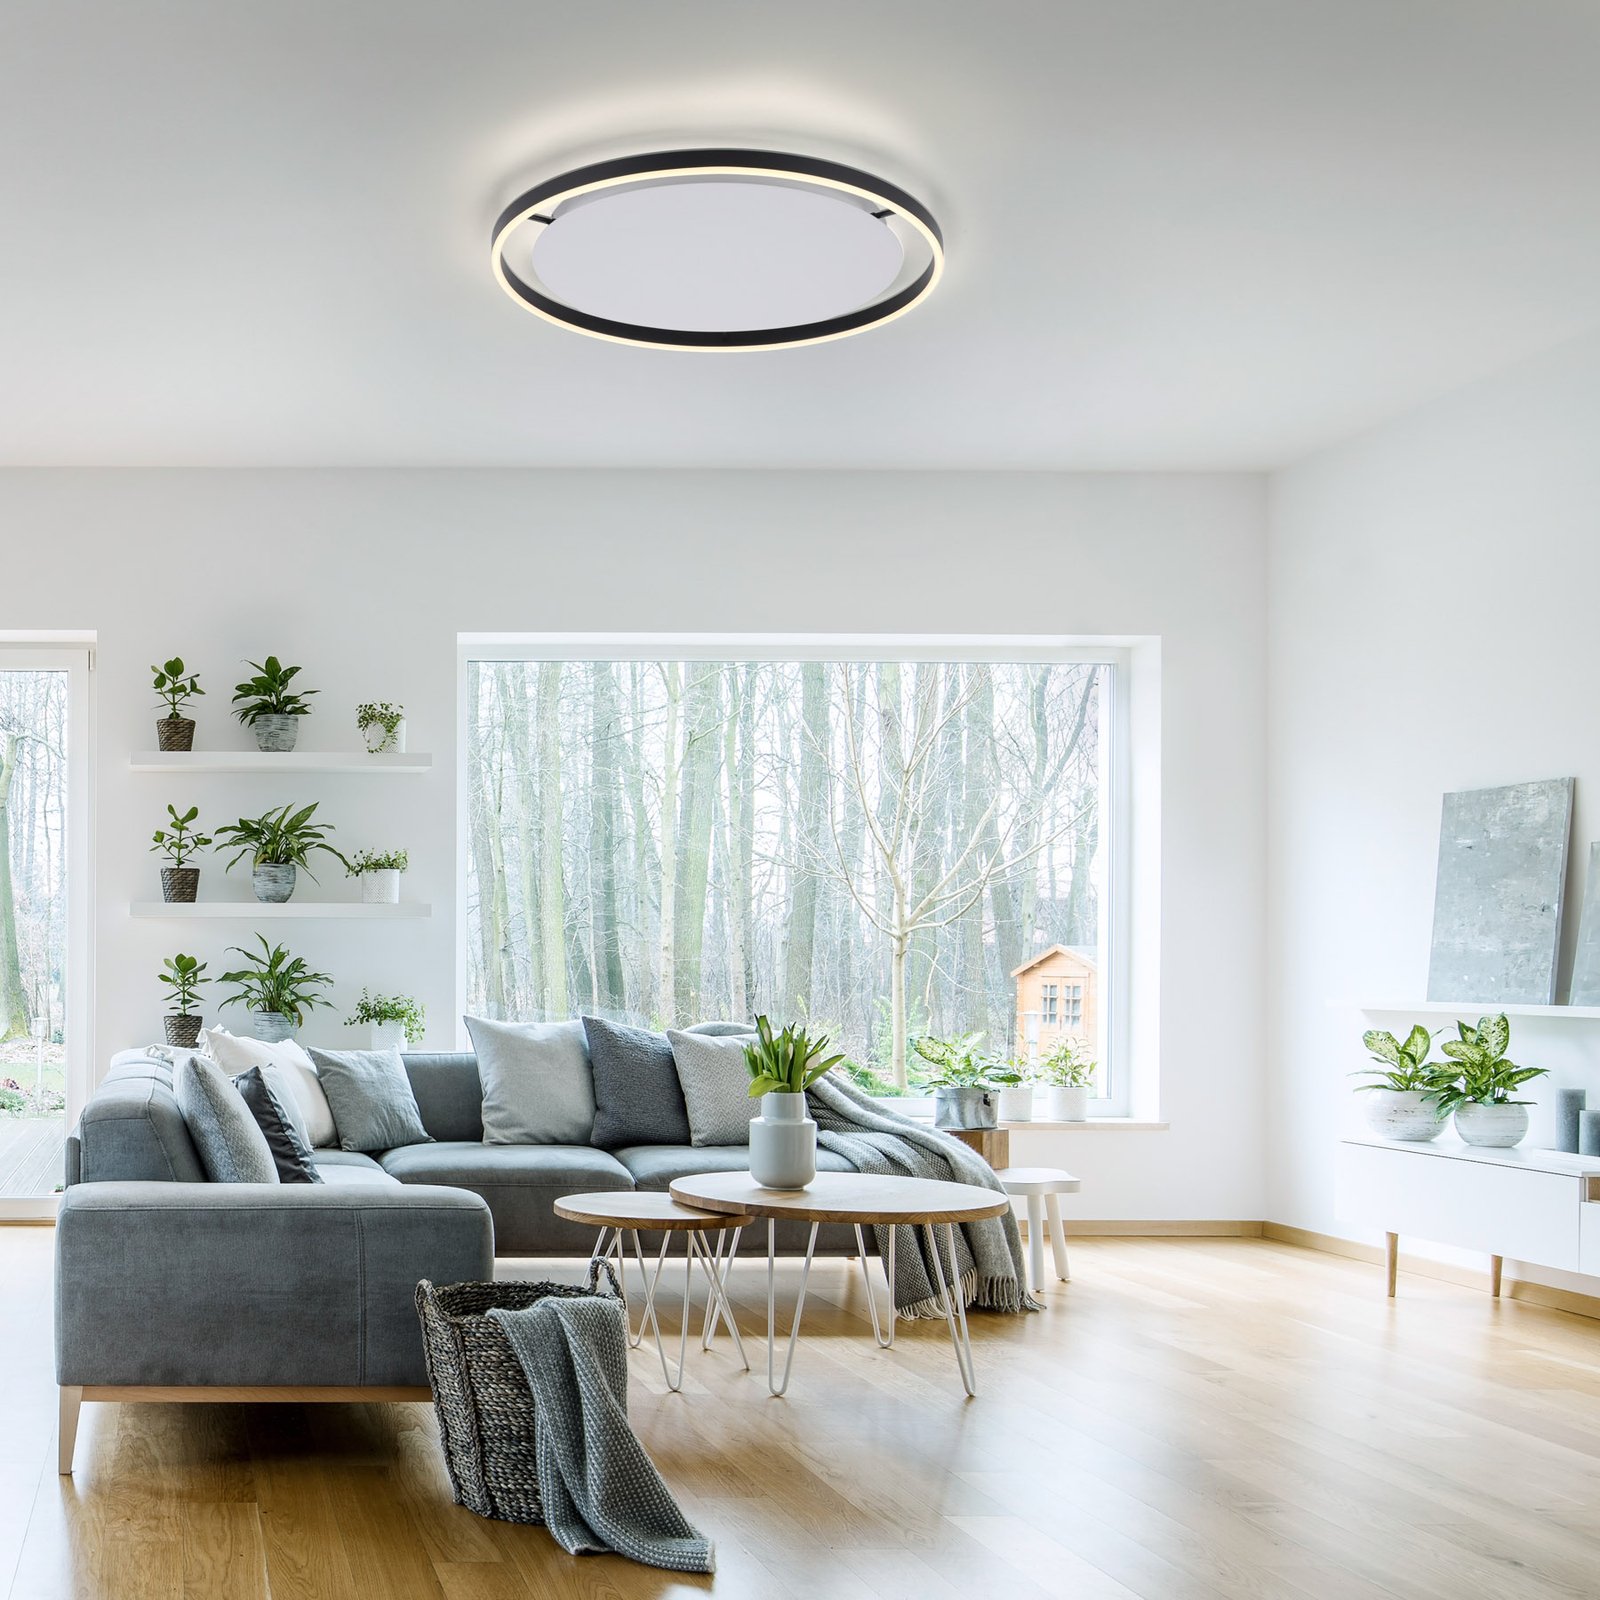 LED ceiling light Ritus, Ø 58.5cm, anthracite